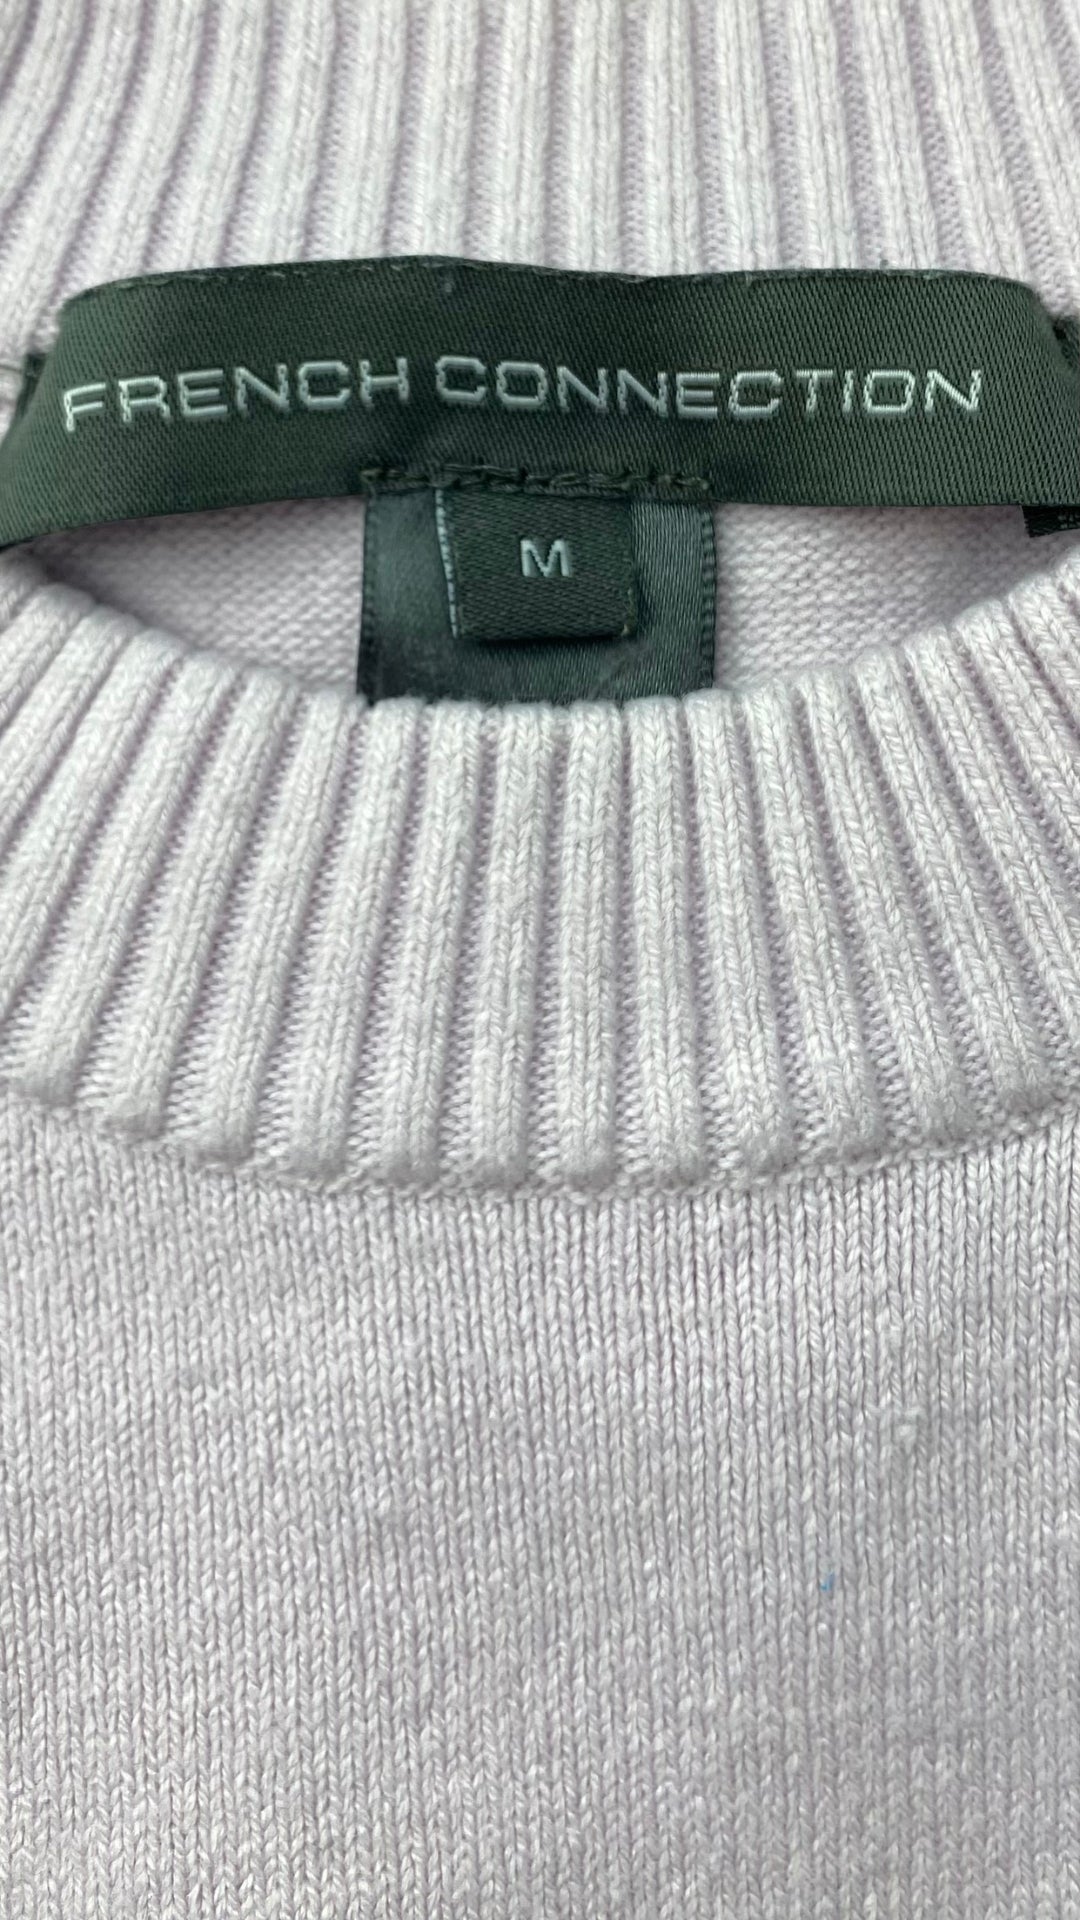 Chandail French Connection ample en tricot lilas. Vue de l'étiquette de marque et taille.